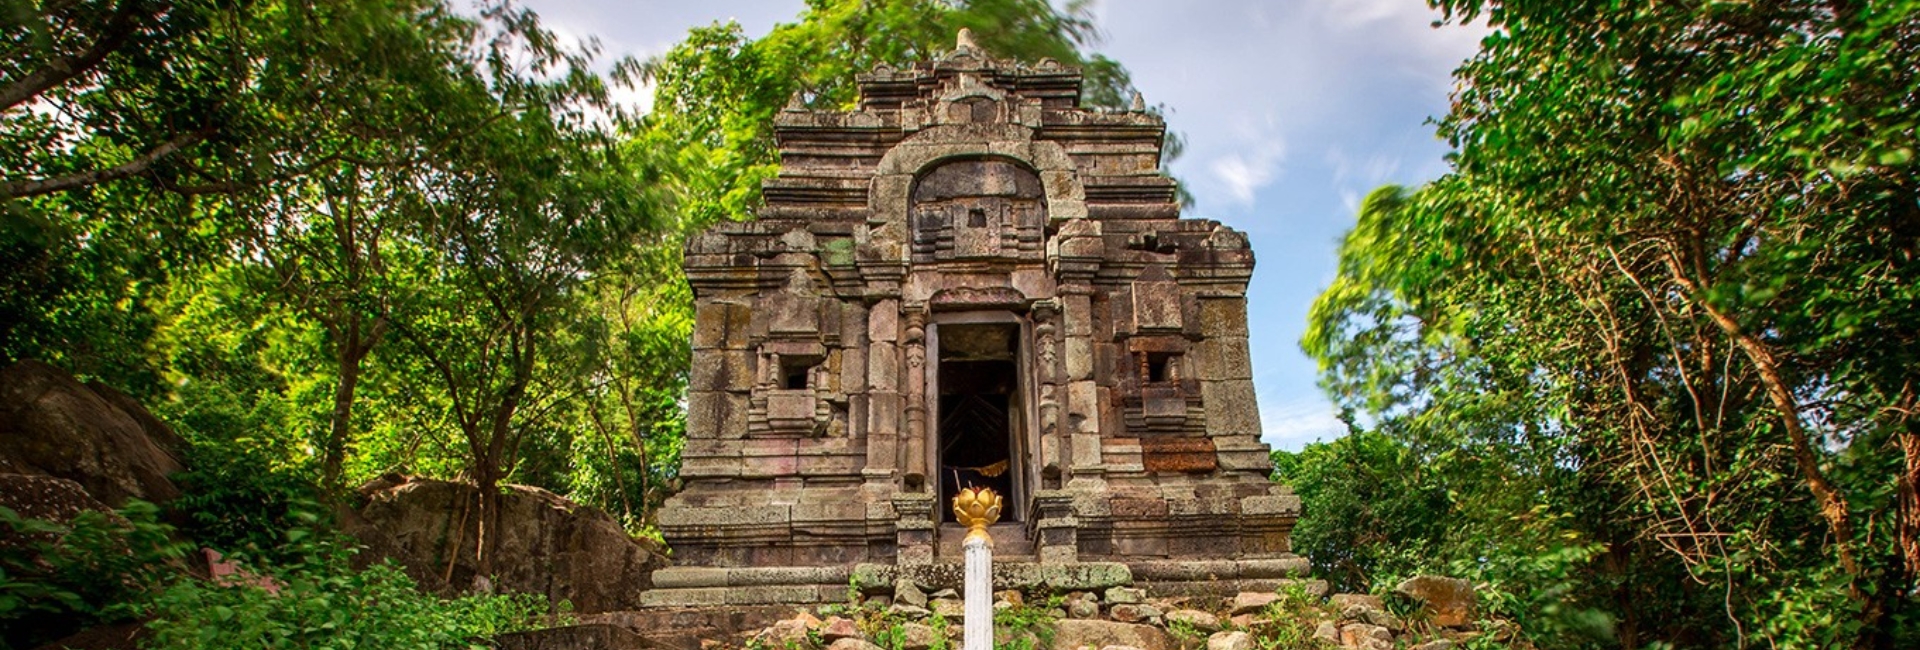 Angkor Borei – the hidden gem in Southern Cambodia